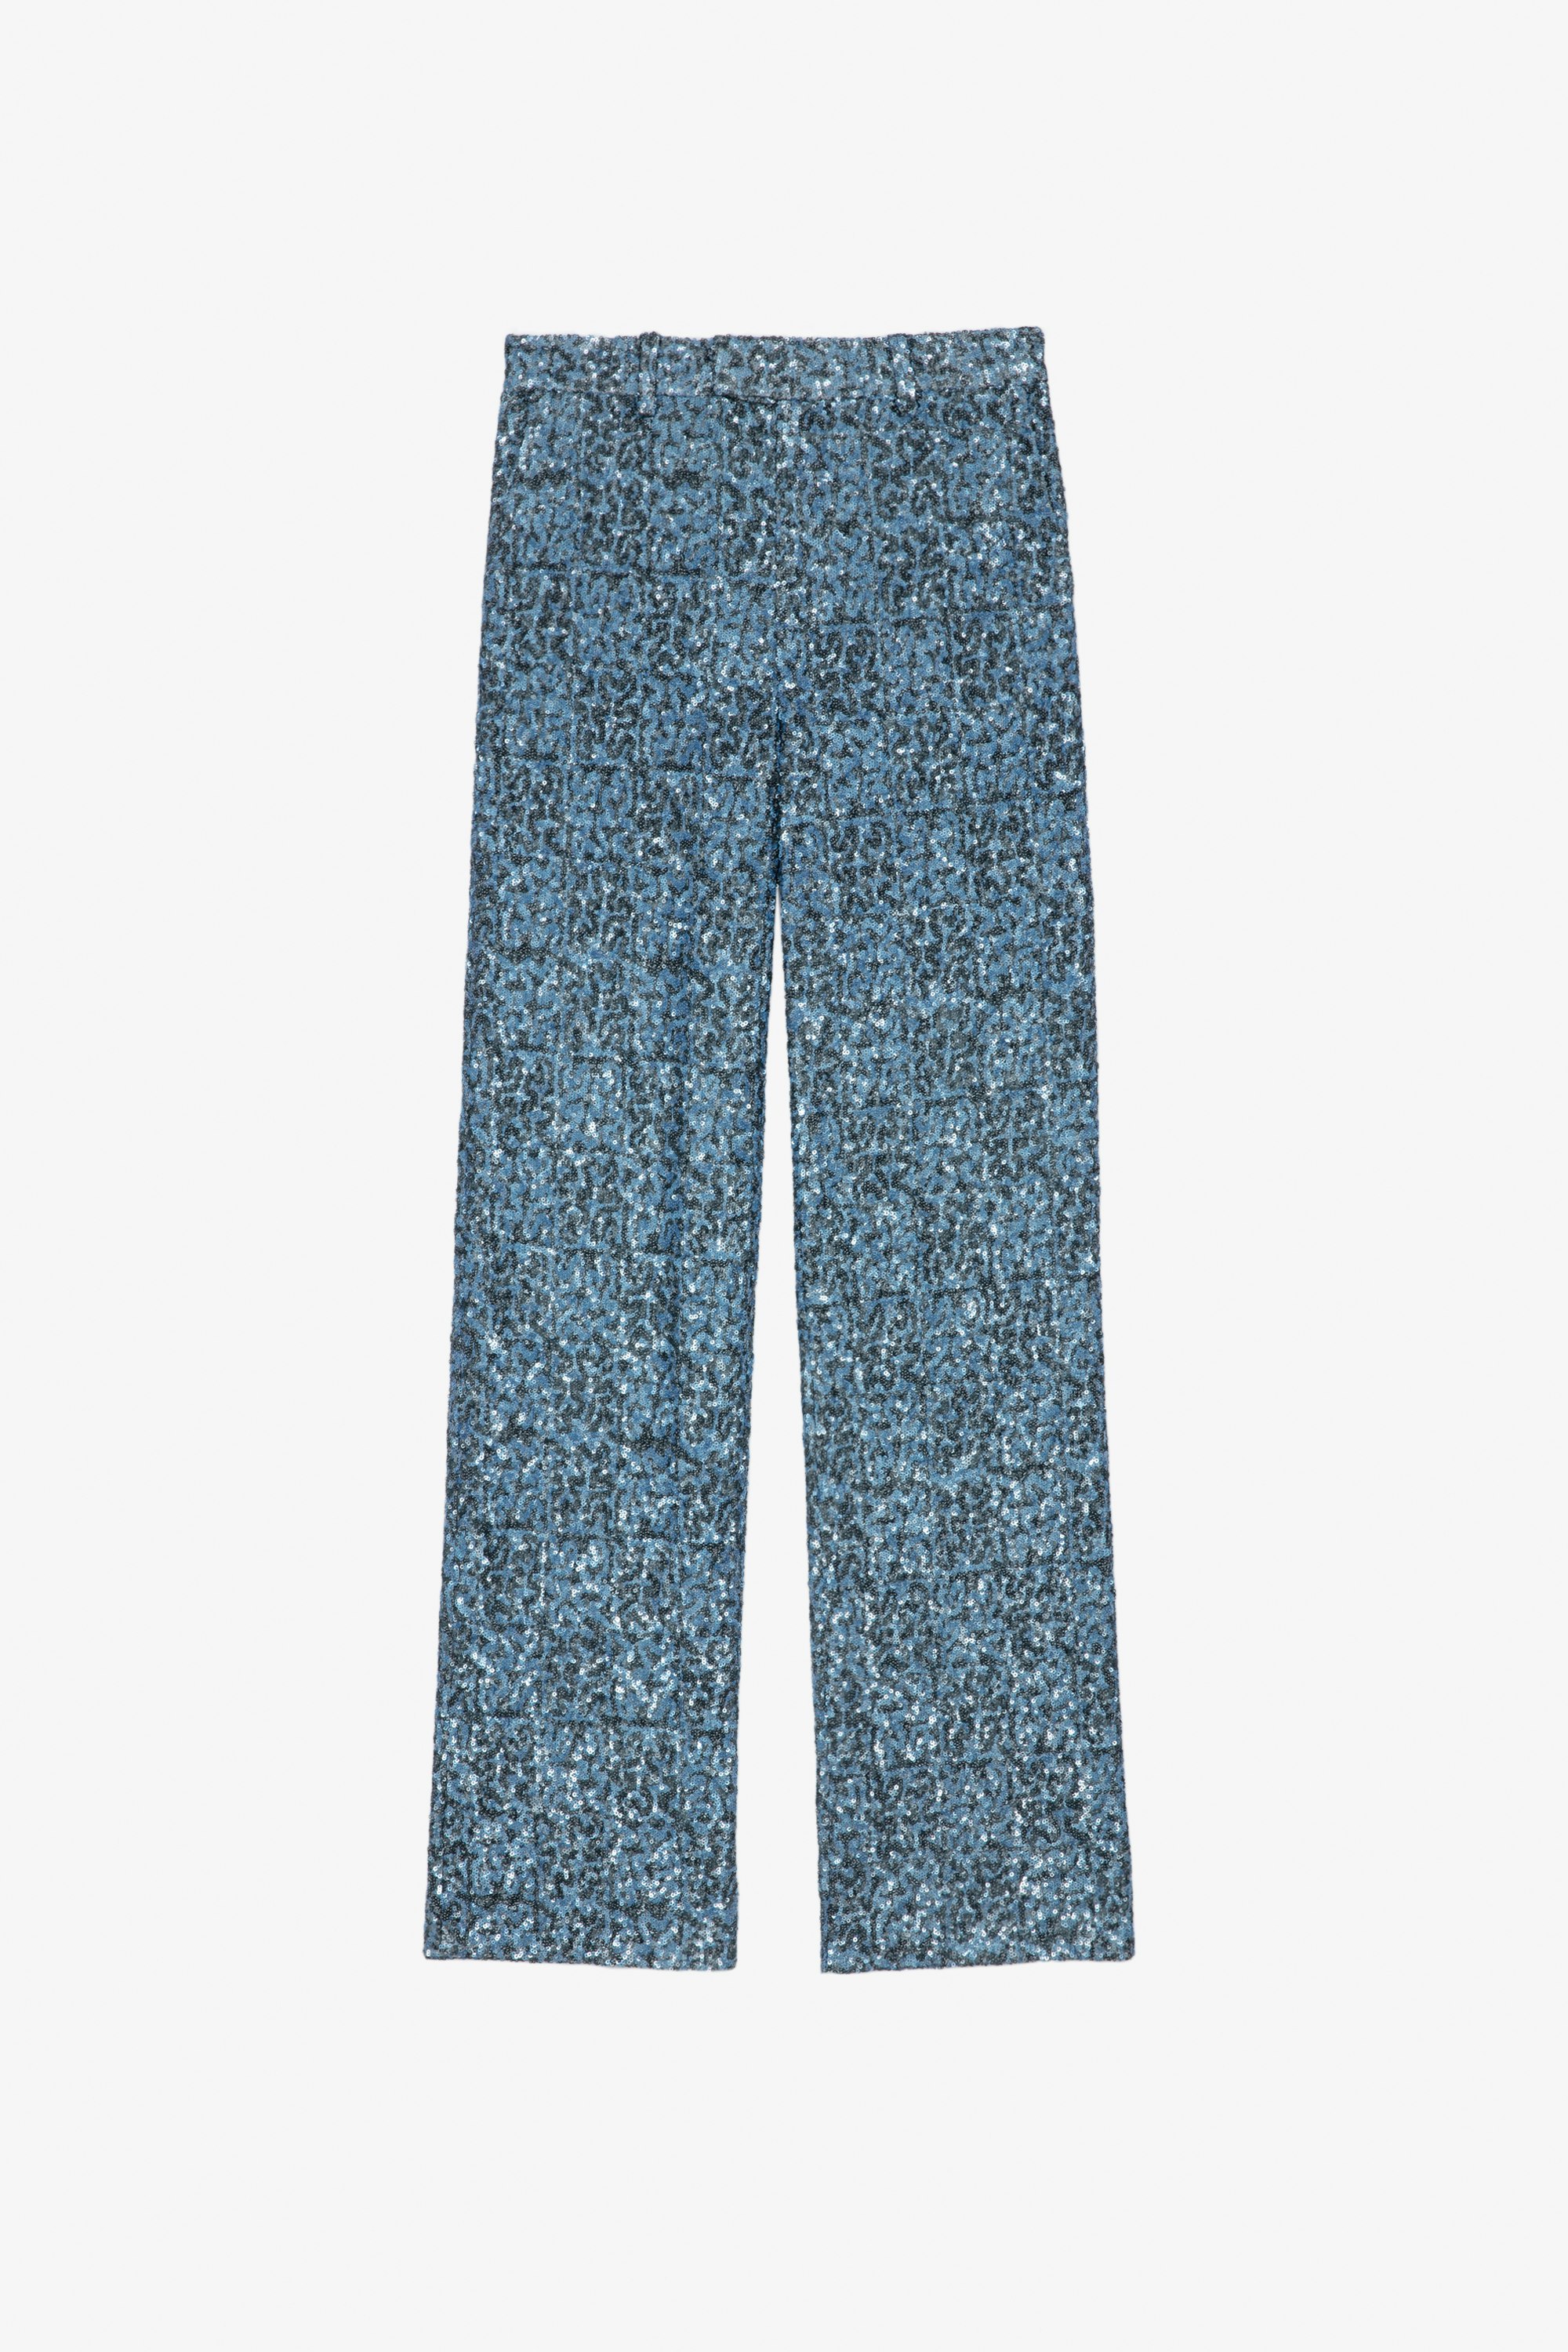 Pantaloni Peter Pantaloni ampi blu con lustrini - Donna